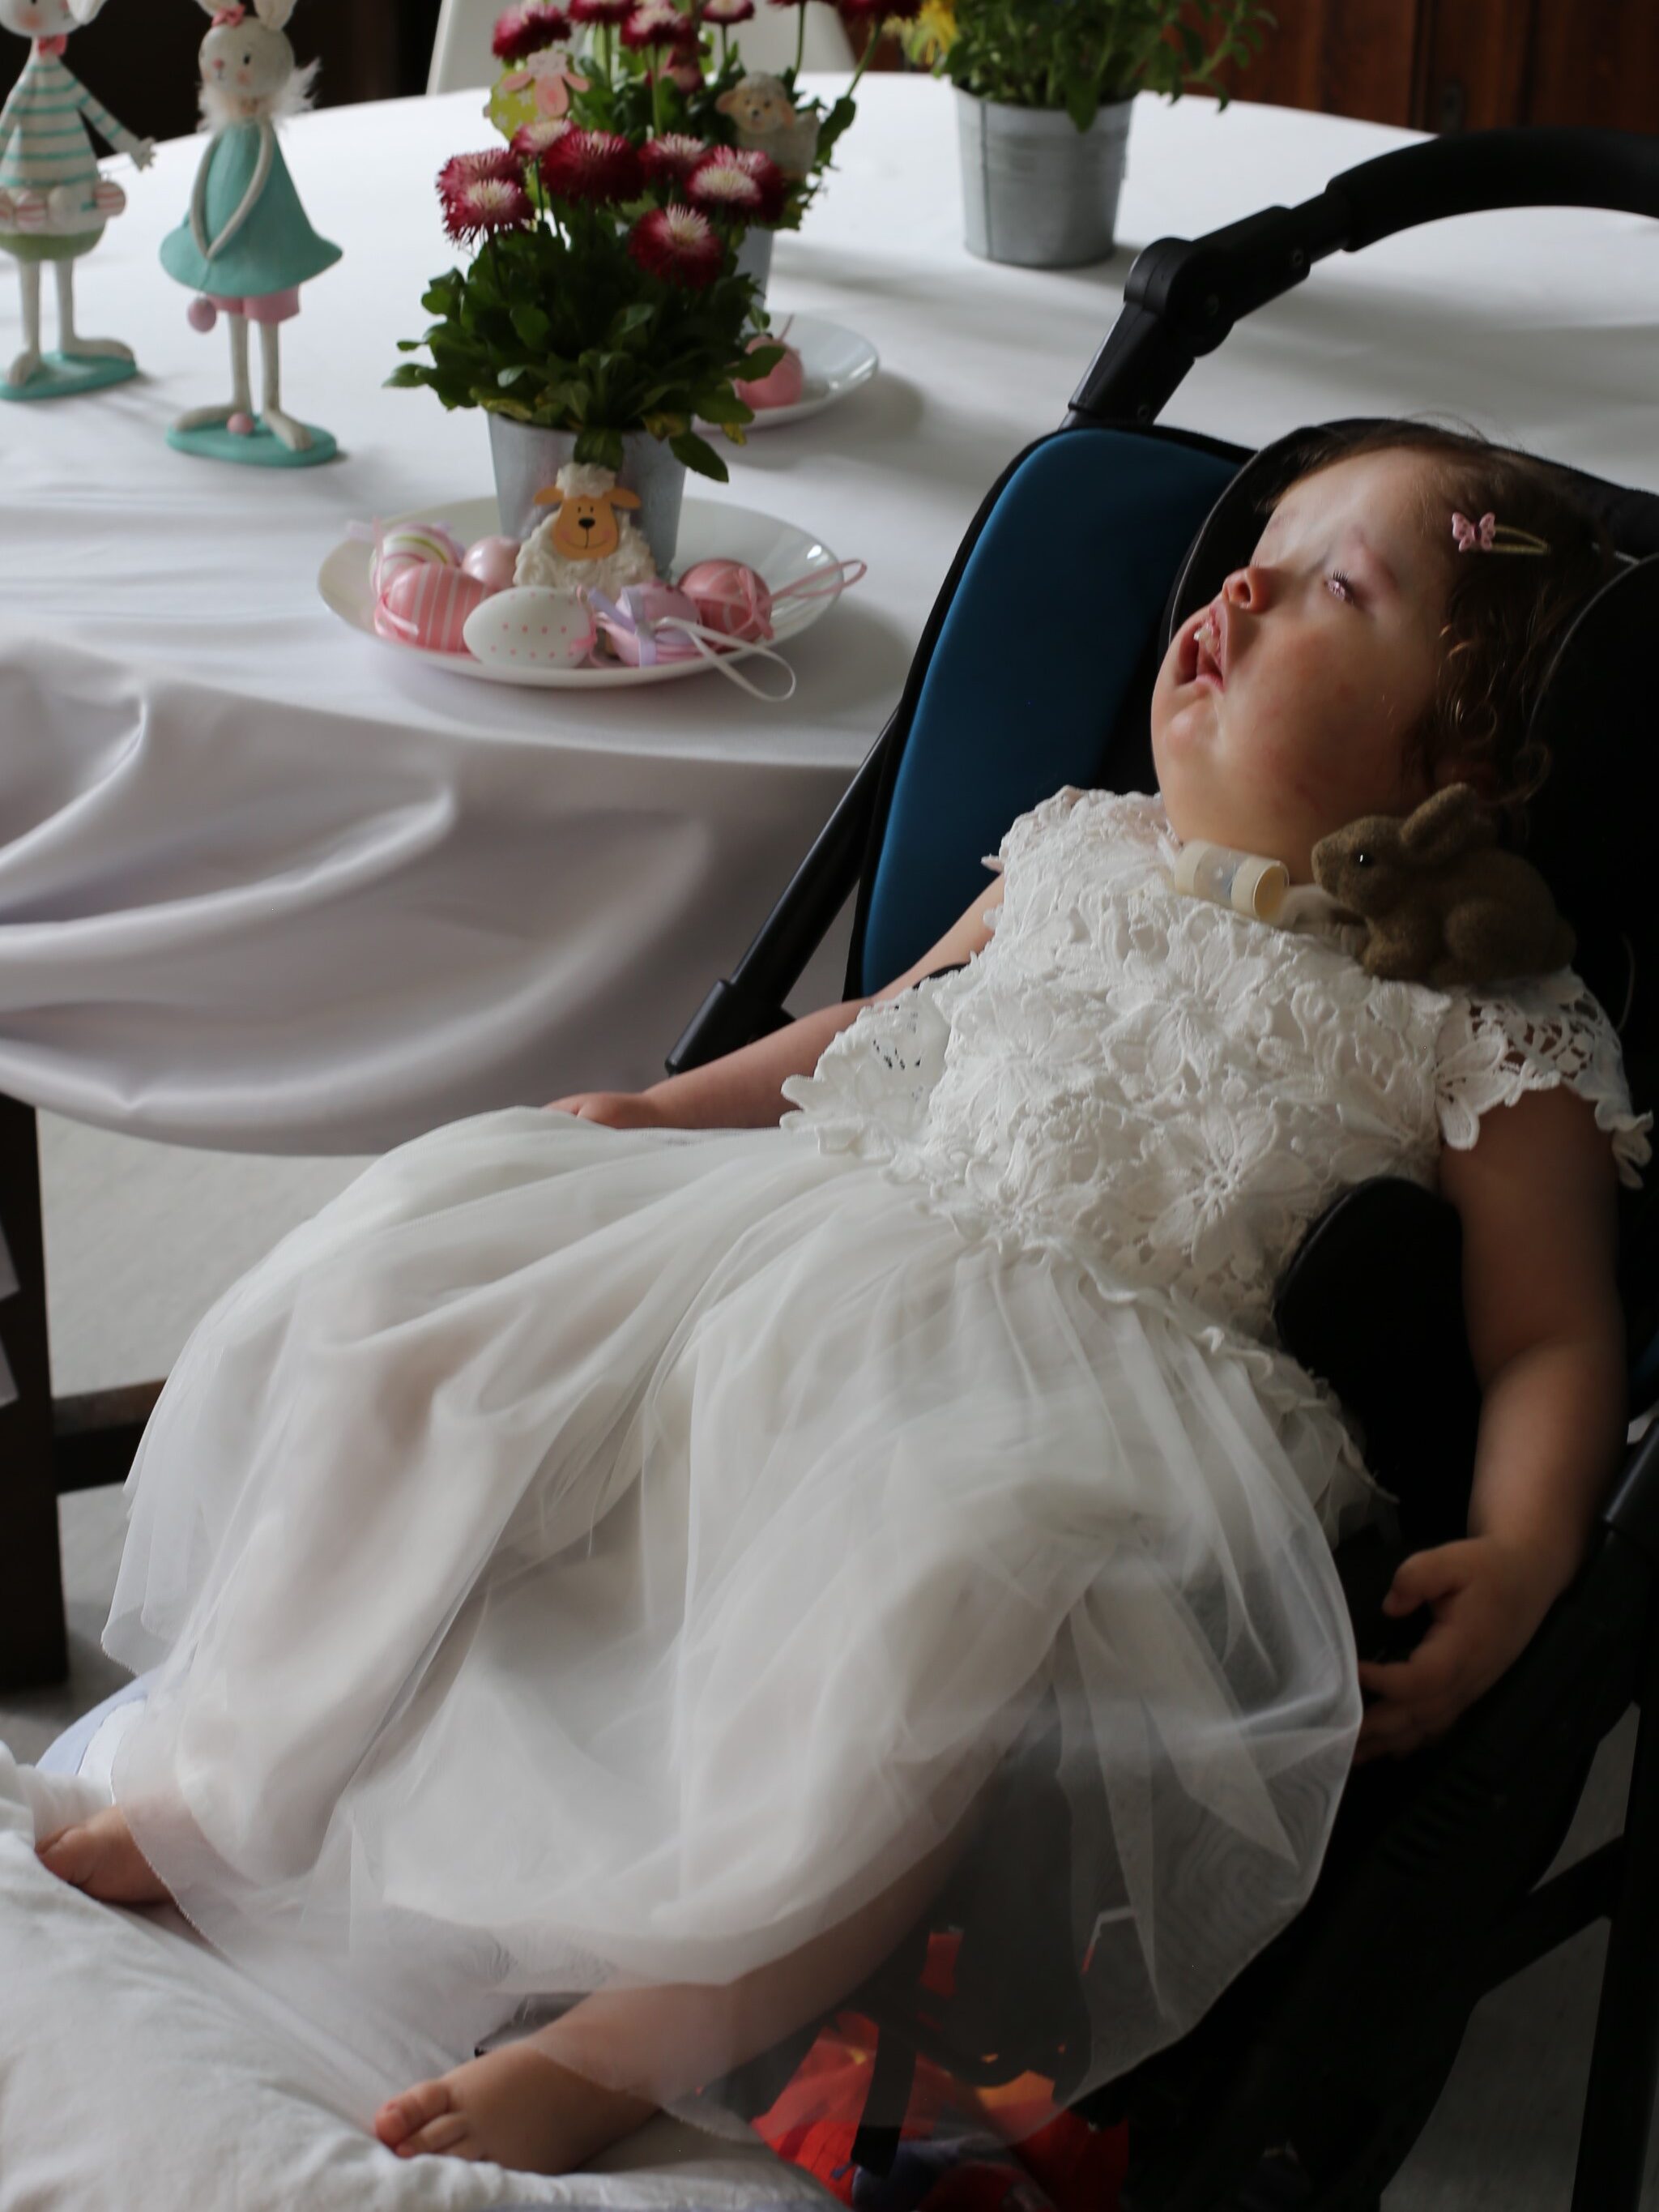 hospicjum stacjonarne zuzia w bialej sukience na wozku dziewczynki nie boja się ciemnosci kwartalnik 0222